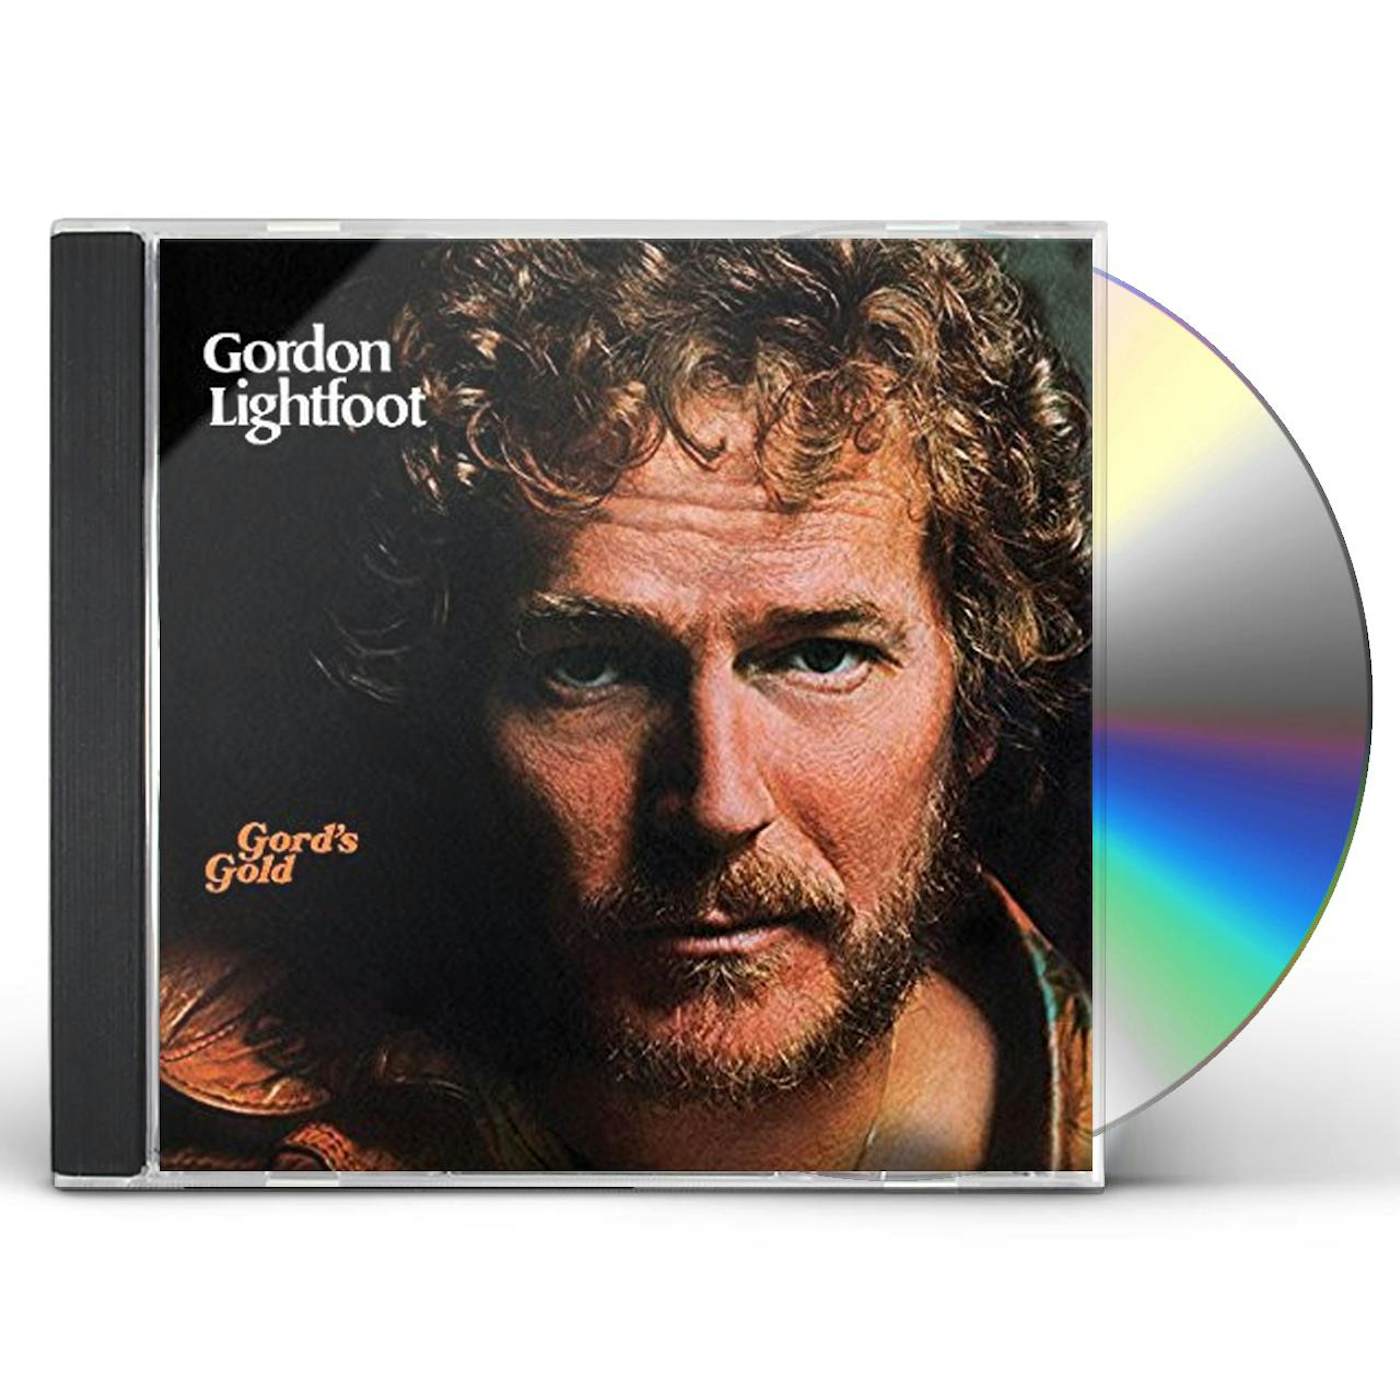 Gordon Lightfoot GORD'S GOLD CD